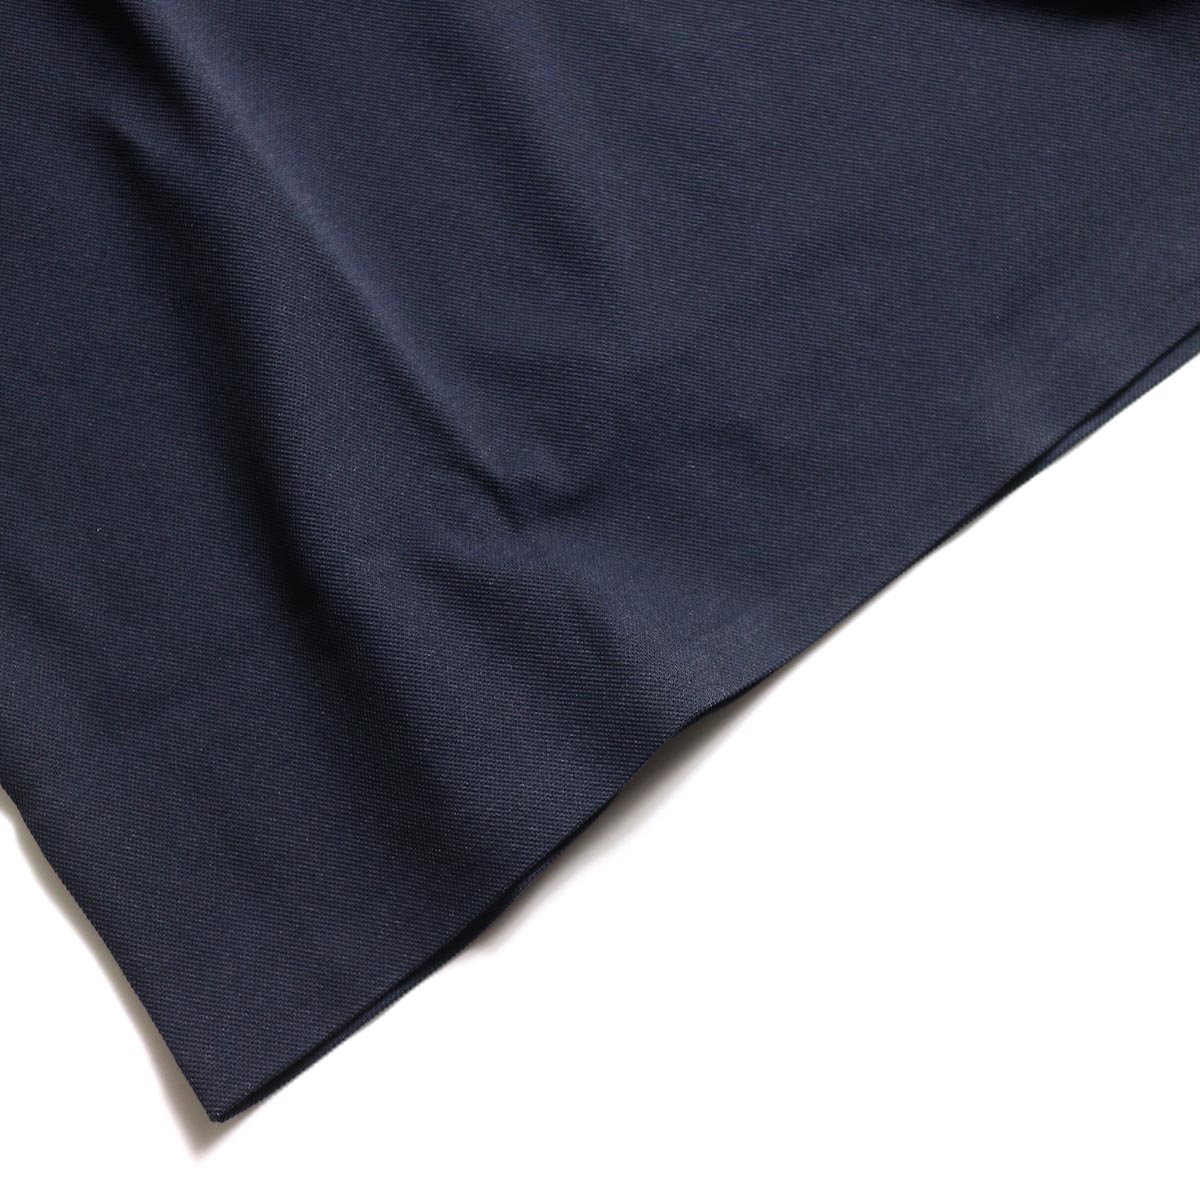 DESCENTE PAUSE / POLO SHIRT (Navy)裾